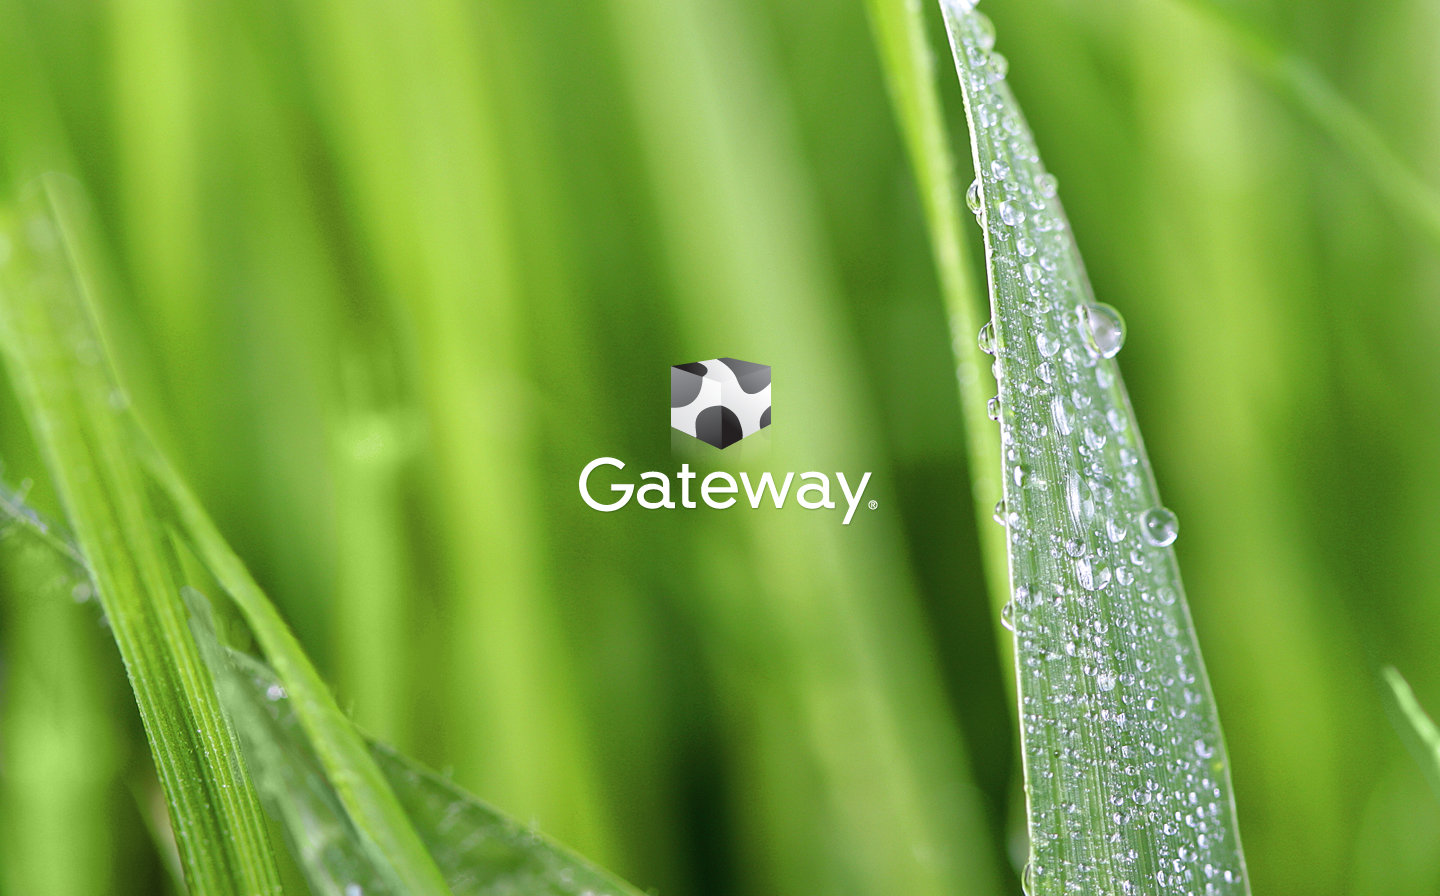 Gateway Puter Desktop Wallpaper In HD